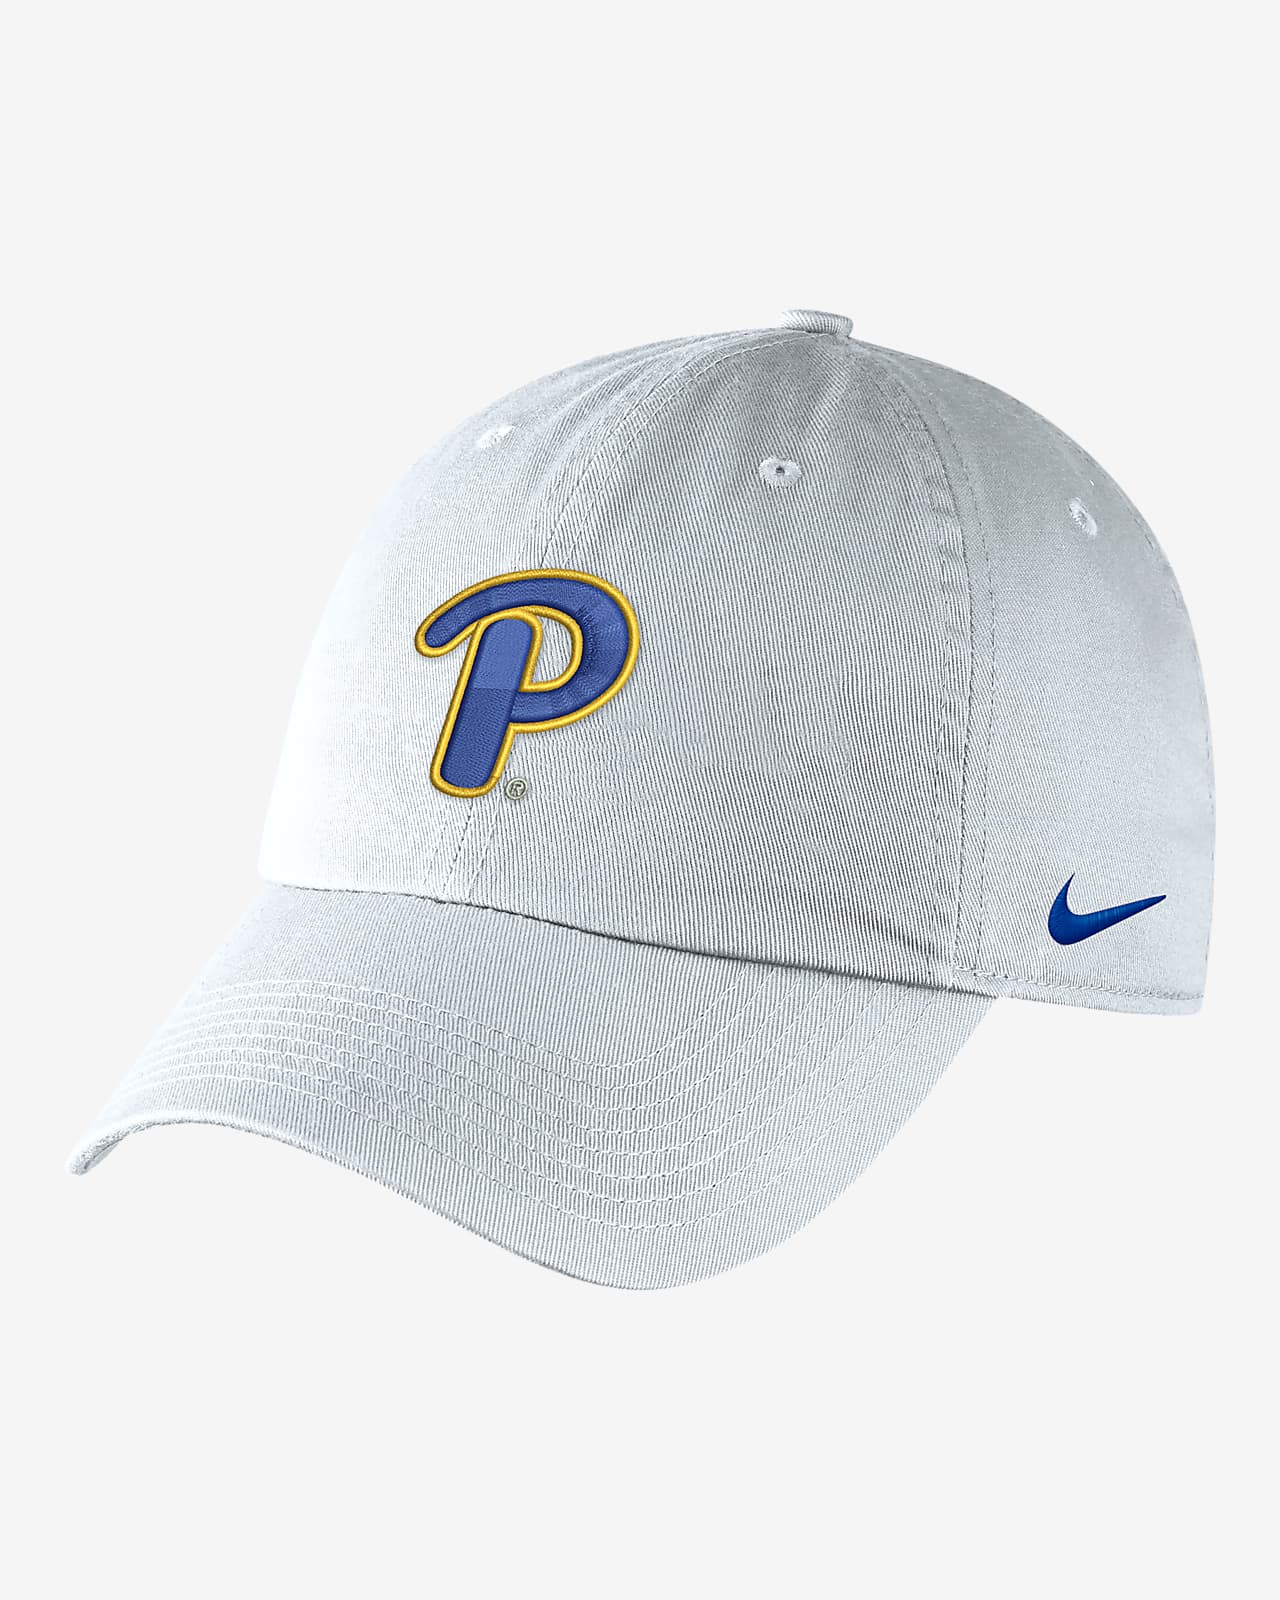 Gorra universitaria Nike con logotipos Pitt Heritage86